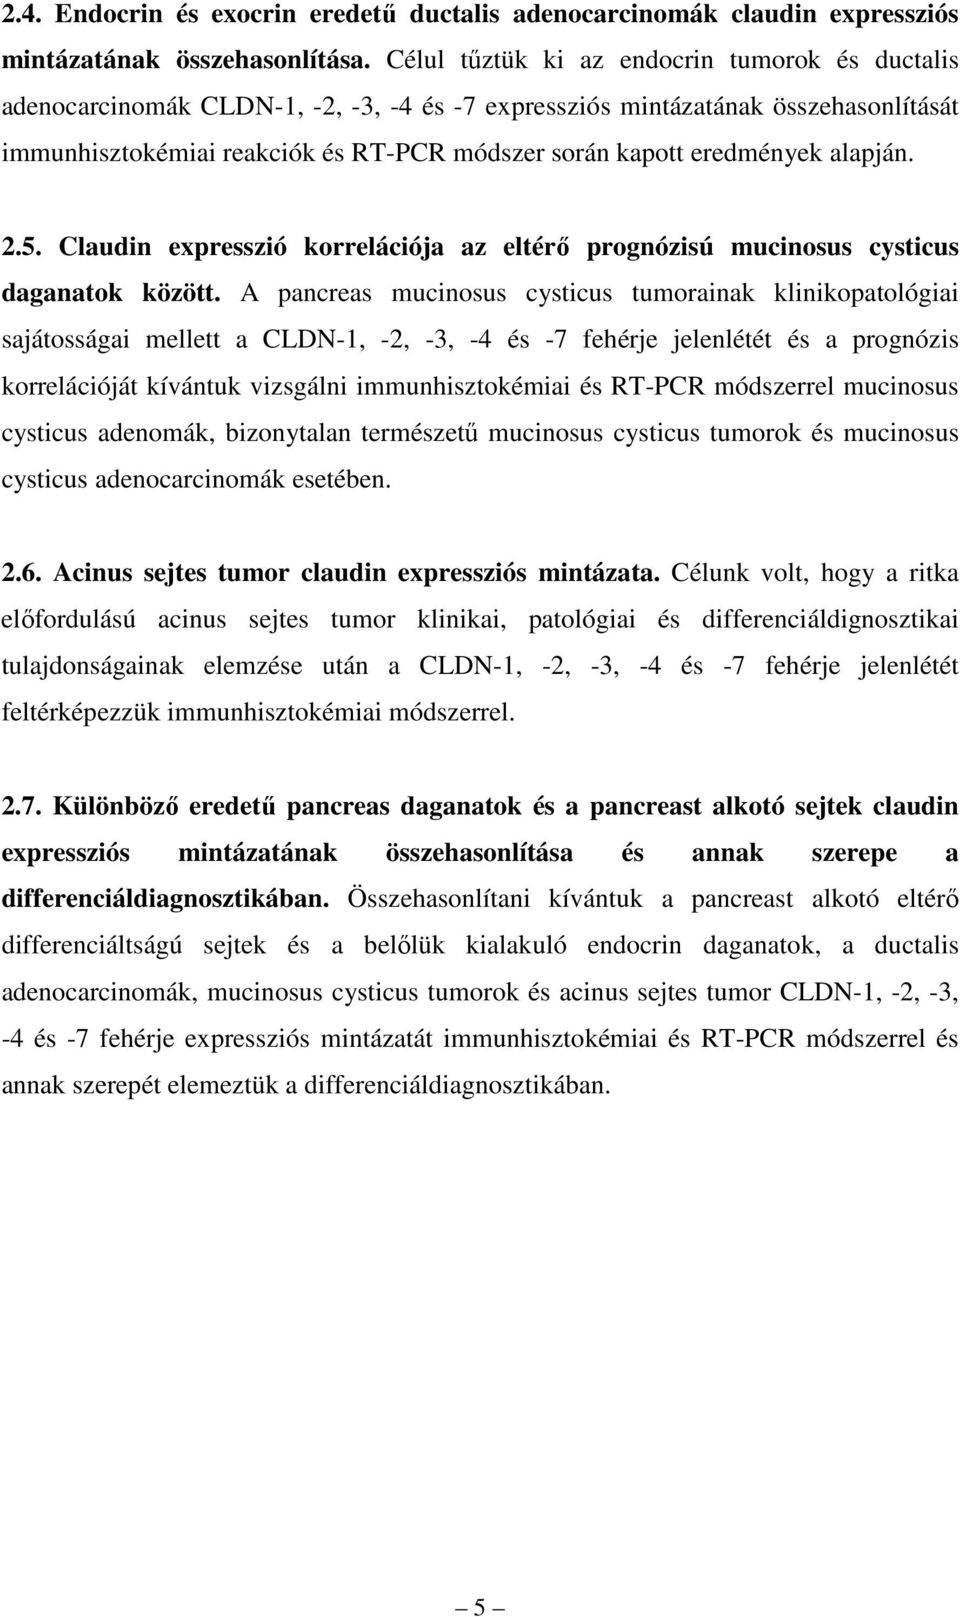 eredmények alapján. 2.5. Claudin expresszió korrelációja az eltérı prognózisú mucinosus cysticus daganatok között.